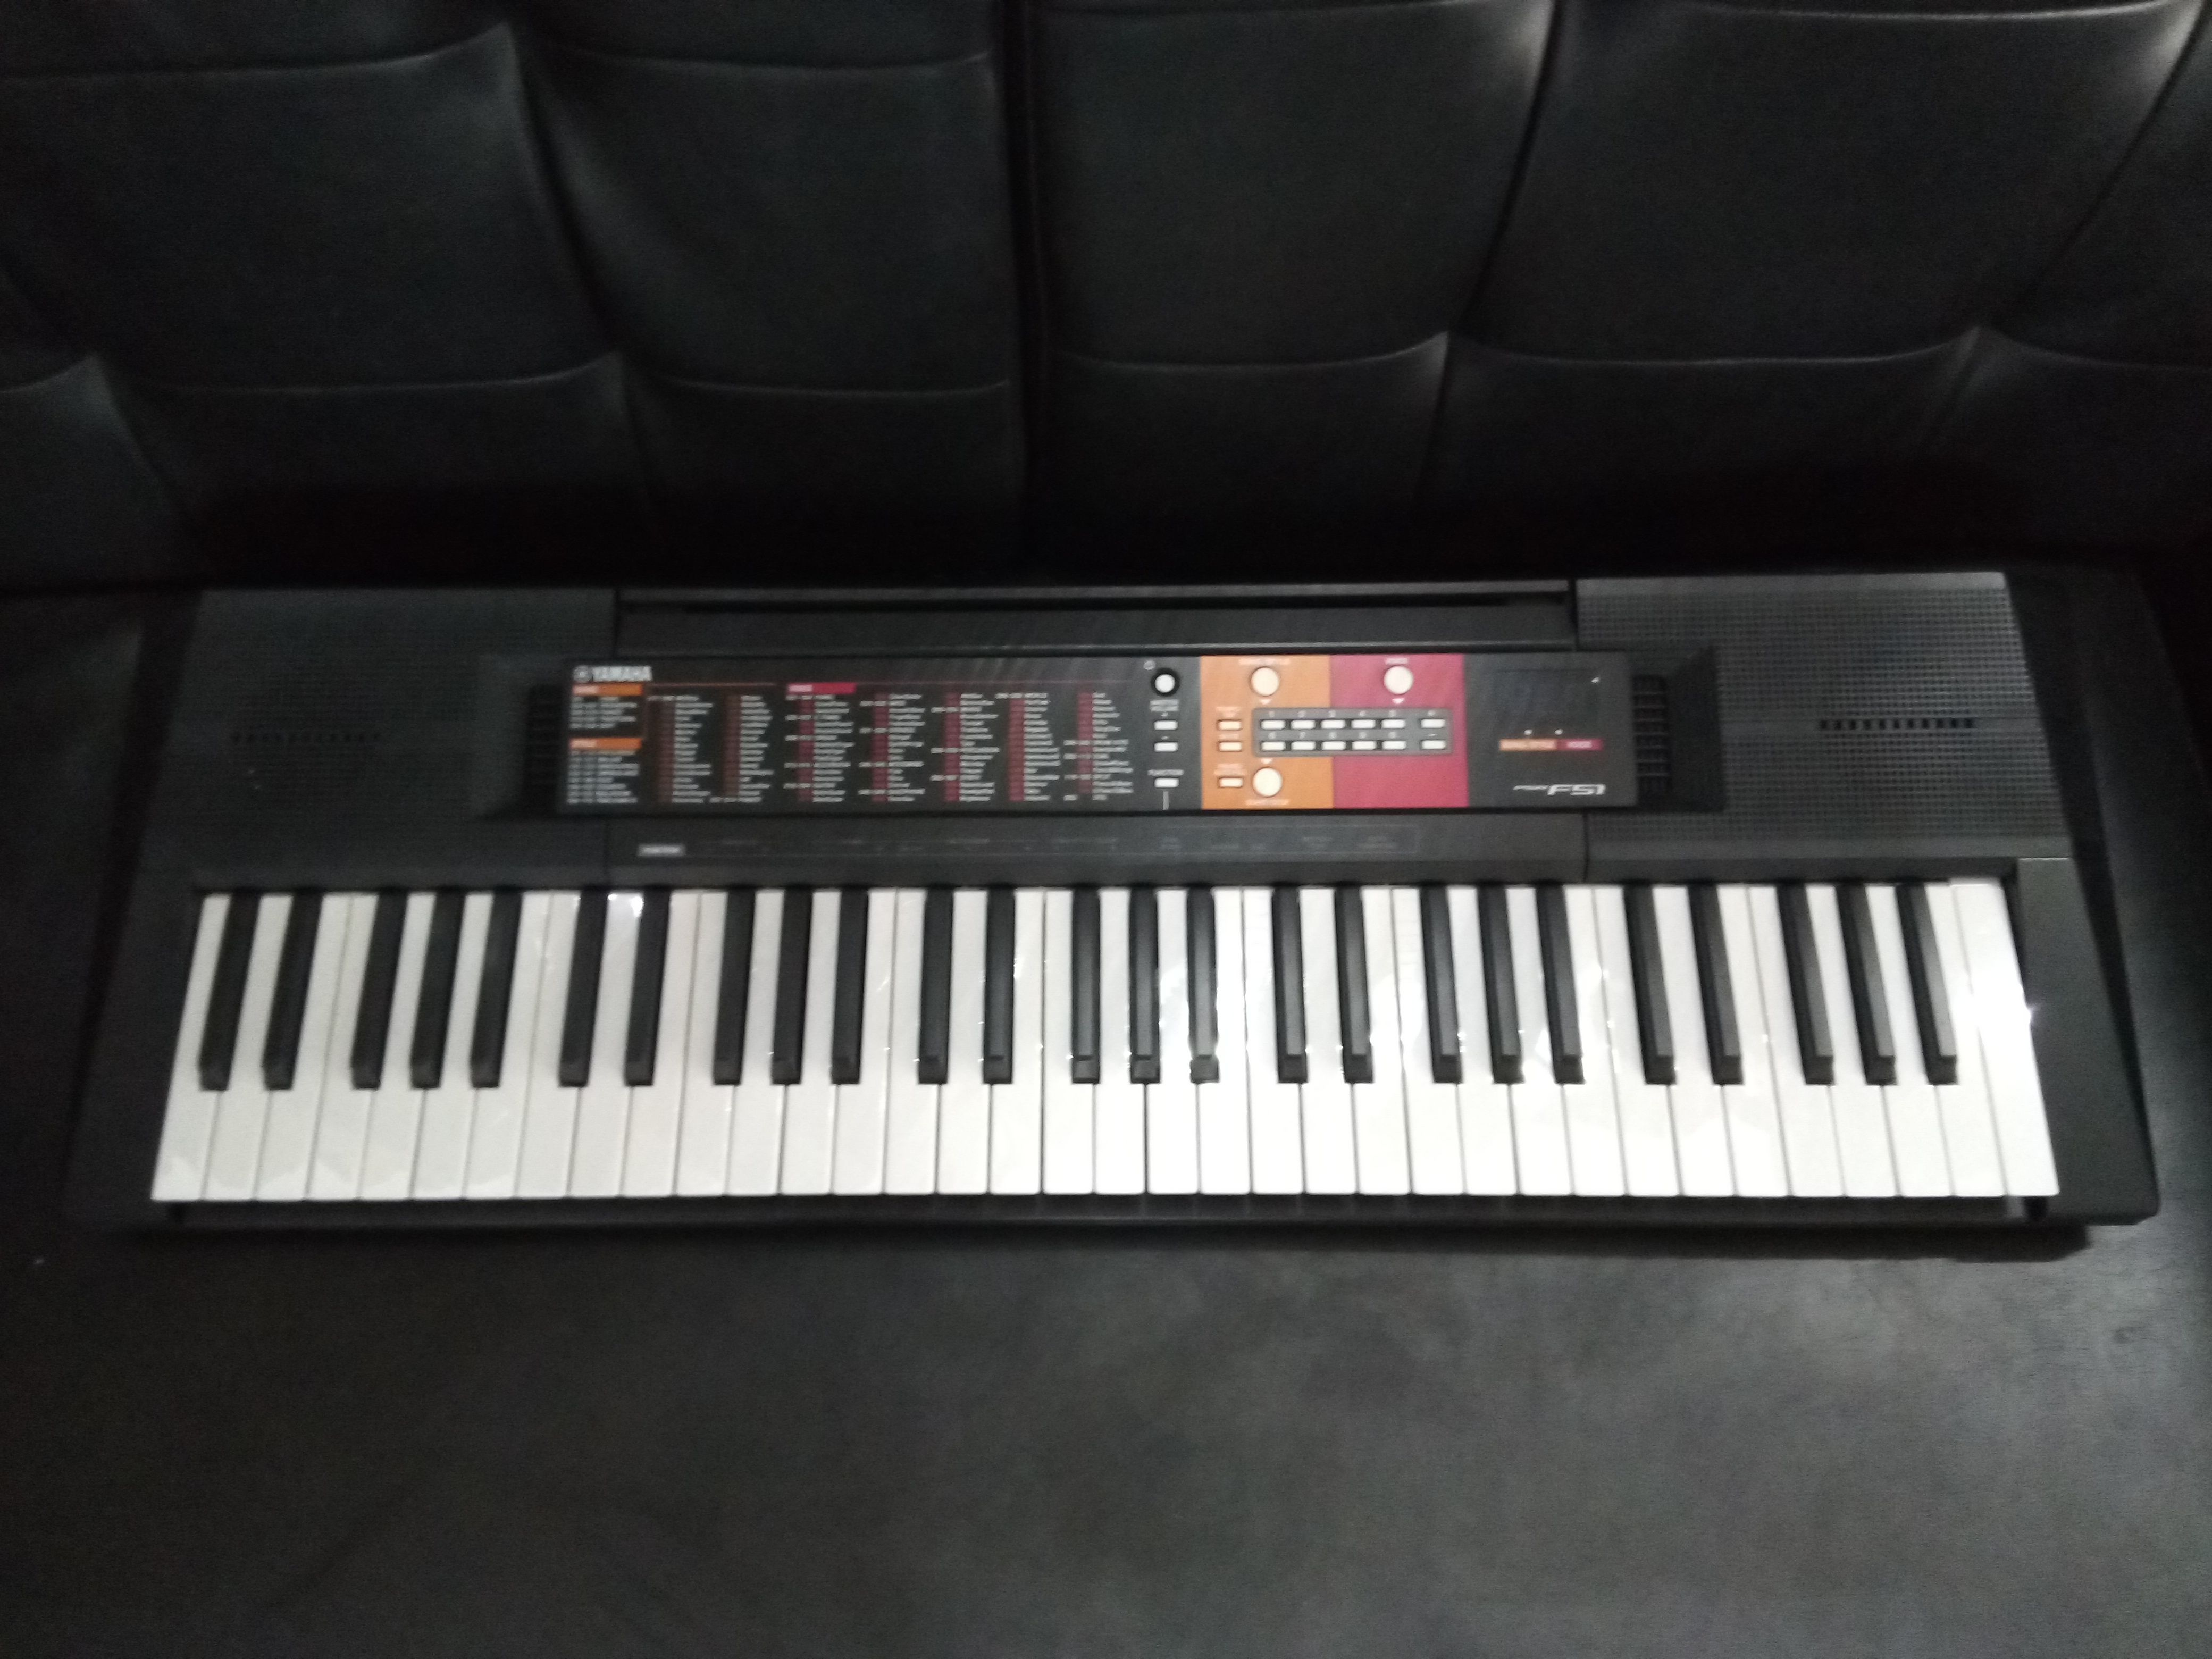 instrumentos musicales - Piano Yamaha PSR F51 NUEVO !!! 61 Teclas Sensibles.
